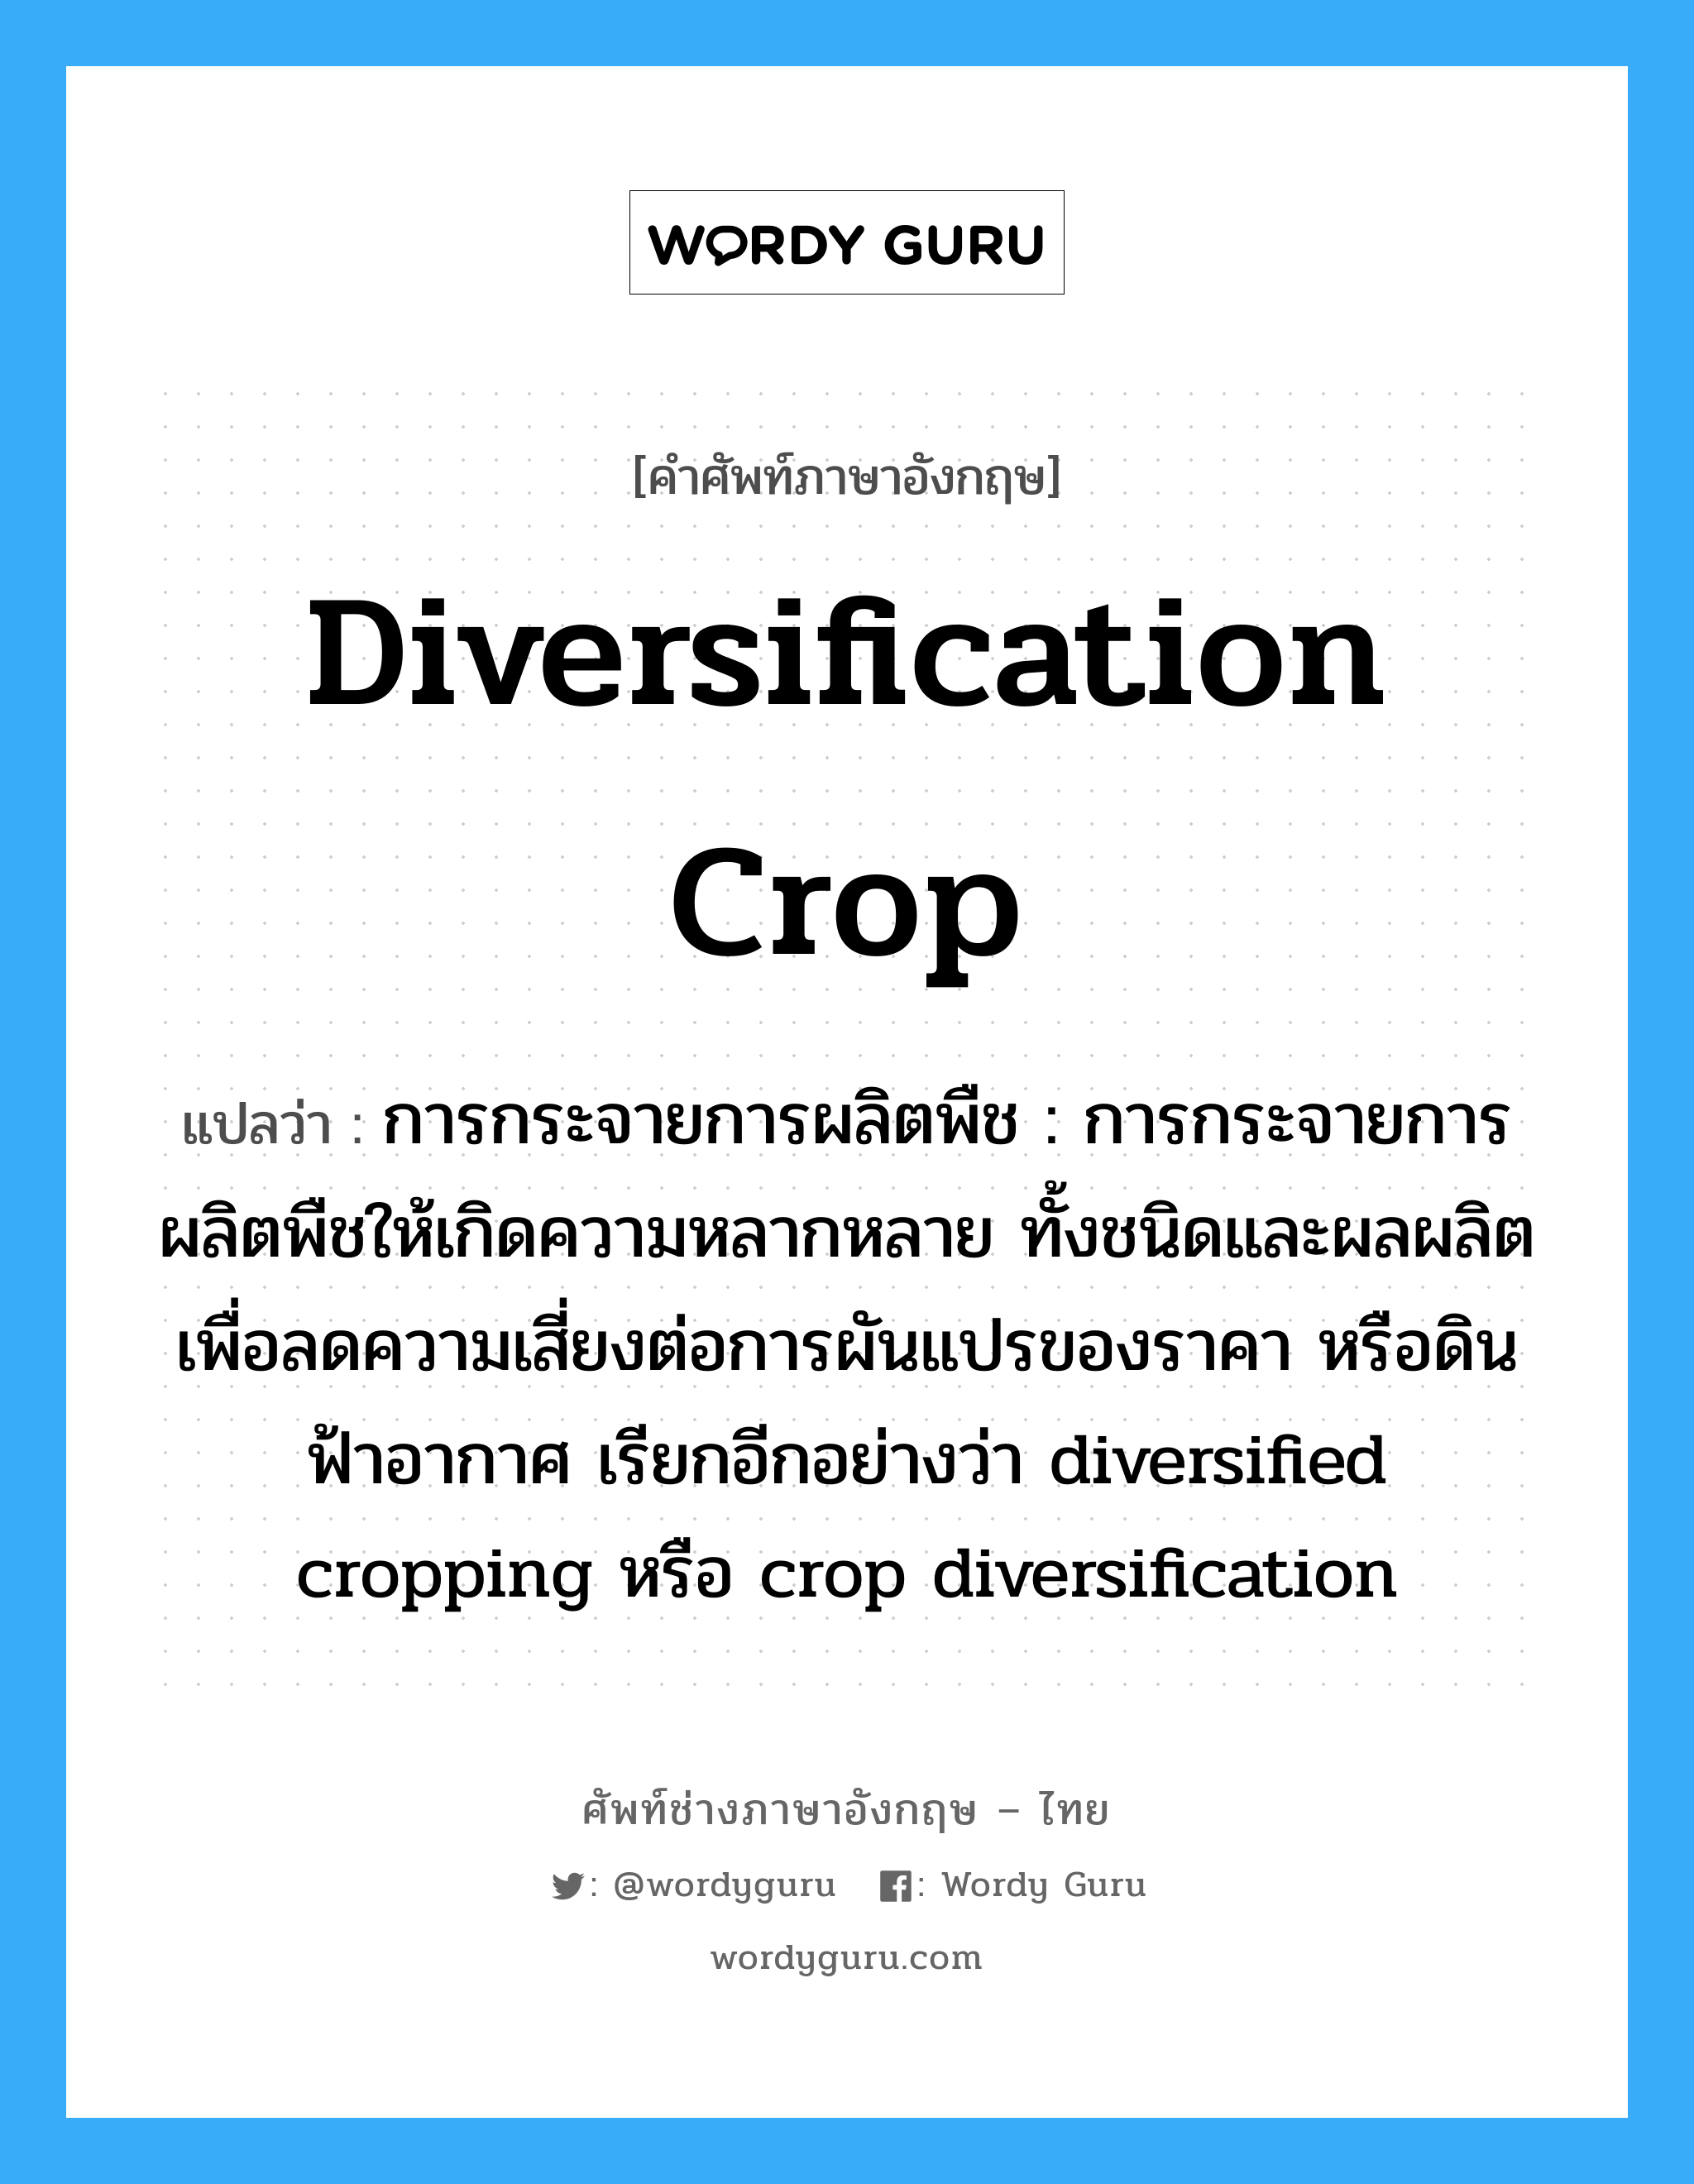 การกระจายการผลิตพืช : การกระจายการผลิตพืชให้เกิดความหลากหลาย ทั้งชนิดและผลผลิตเพื่อลดความเสี่ยงต่อการผันแปรของราคา หรือดินฟ้าอากาศ เรียกอีกอย่างว่า diversified cropping หรือ crop diversification ภาษาอังกฤษ?, คำศัพท์ช่างภาษาอังกฤษ - ไทย การกระจายการผลิตพืช : การกระจายการผลิตพืชให้เกิดความหลากหลาย ทั้งชนิดและผลผลิตเพื่อลดความเสี่ยงต่อการผันแปรของราคา หรือดินฟ้าอากาศ เรียกอีกอย่างว่า diversified cropping หรือ crop diversification คำศัพท์ภาษาอังกฤษ การกระจายการผลิตพืช : การกระจายการผลิตพืชให้เกิดความหลากหลาย ทั้งชนิดและผลผลิตเพื่อลดความเสี่ยงต่อการผันแปรของราคา หรือดินฟ้าอากาศ เรียกอีกอย่างว่า diversified cropping หรือ crop diversification แปลว่า diversification crop